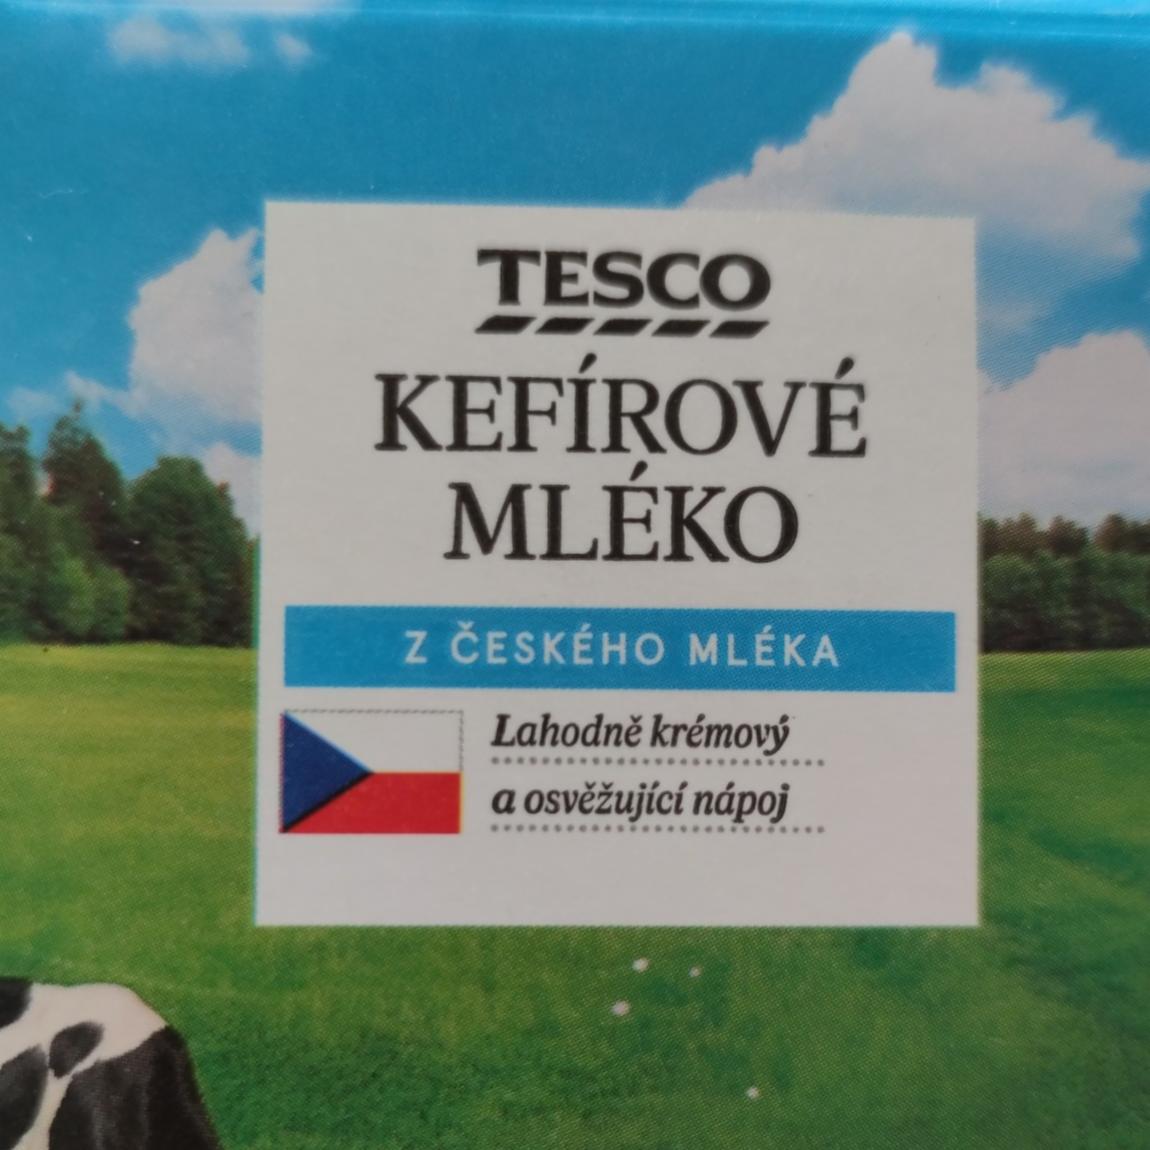 Fotografie - Kefírové mléko z českého mléka Tesco